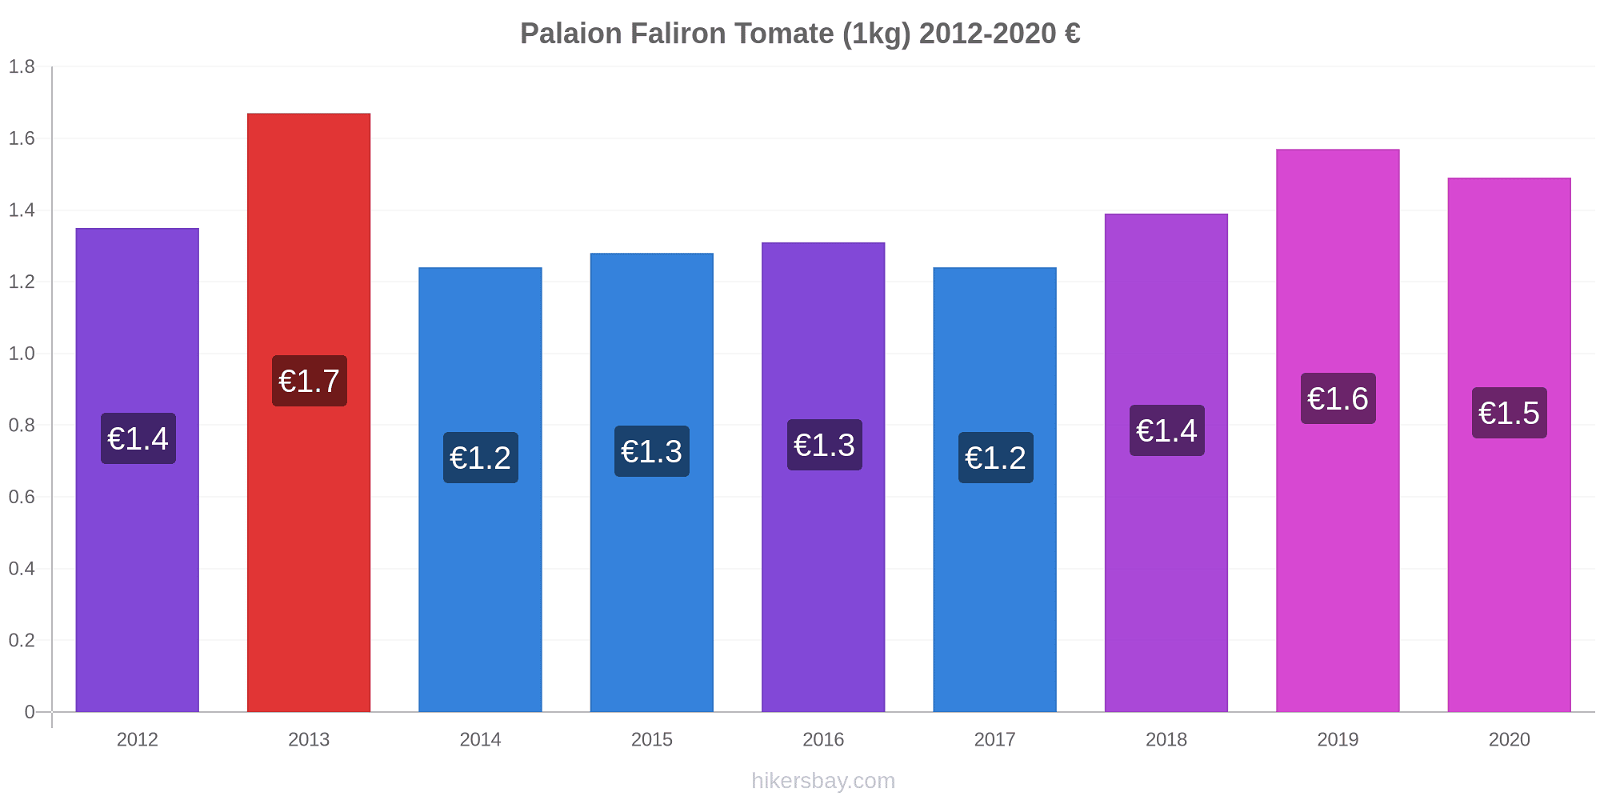 Palaion Faliron modificări de preț Tomate (1kg) hikersbay.com